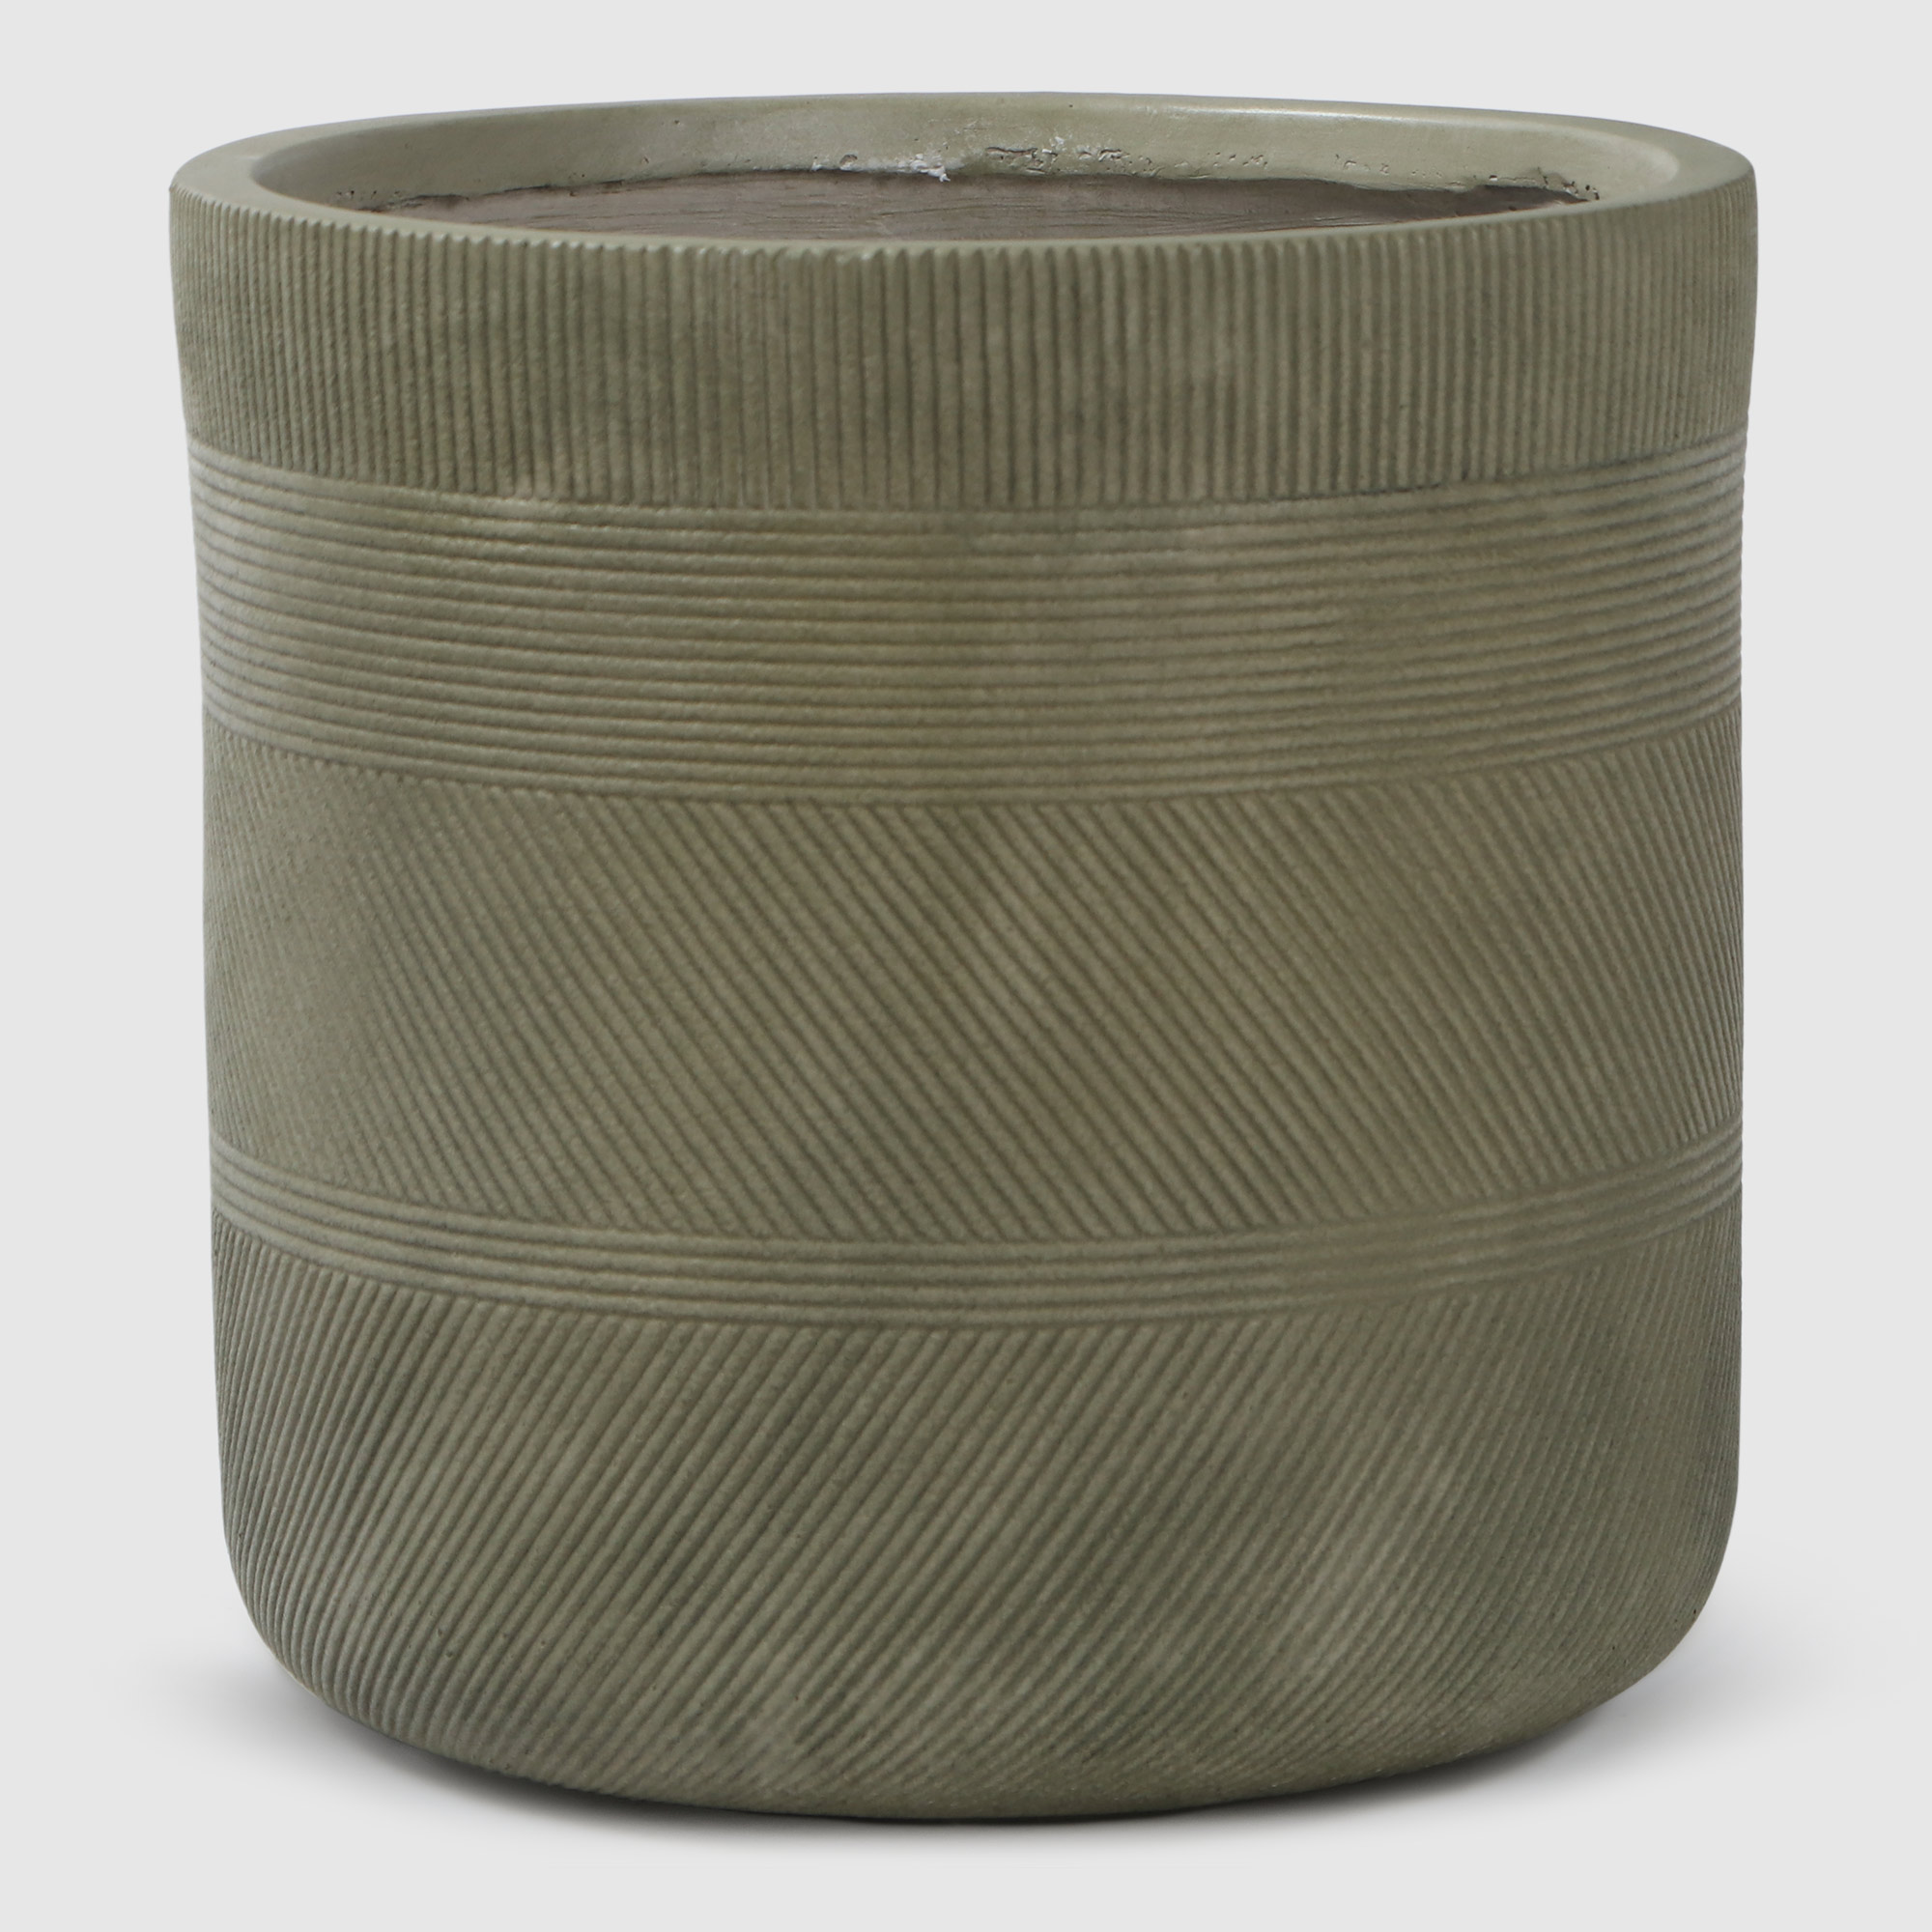 Где купить Горшок для цветов L&T Pottery цилиндр антик светло-зеленый d36 Без бренда 